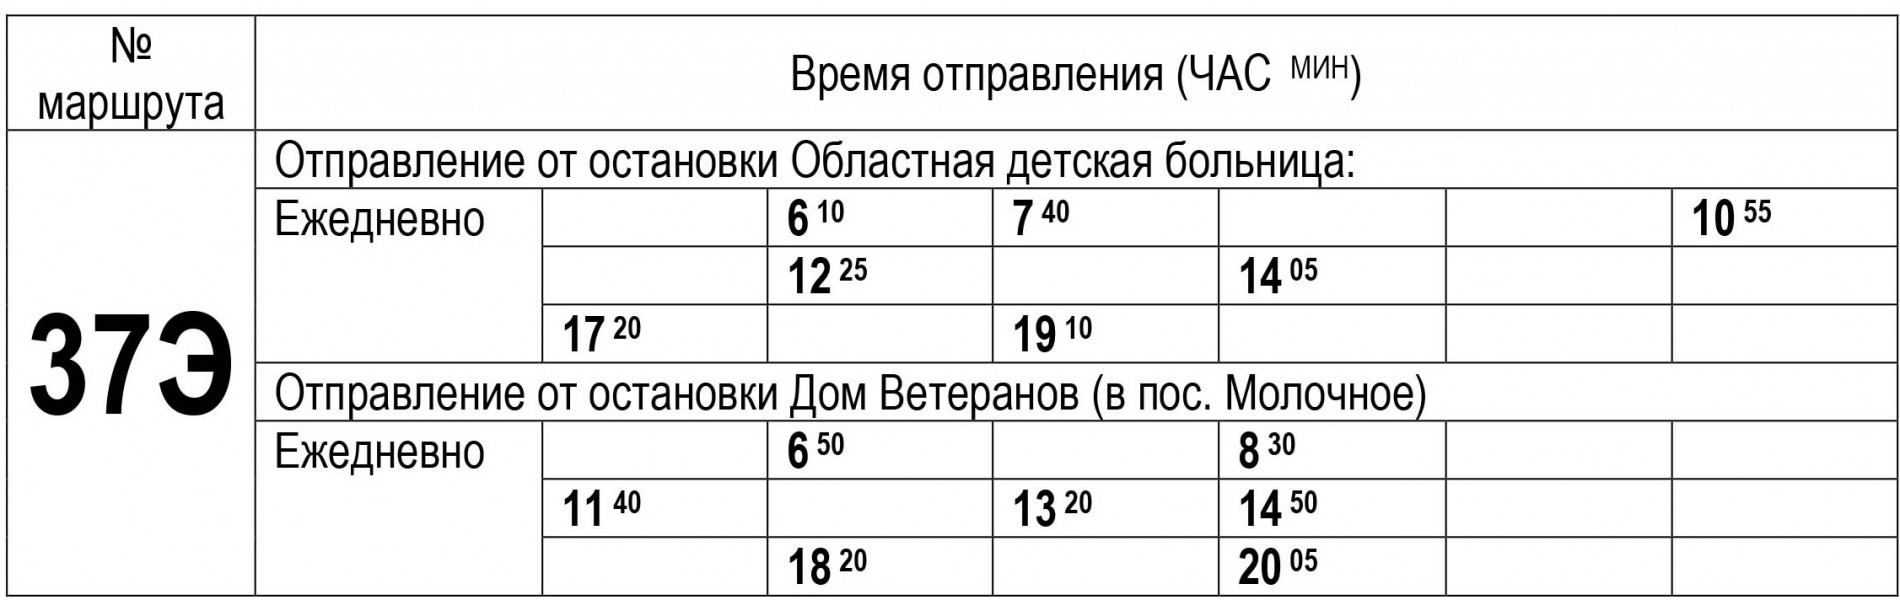 Расписание движения автобуса по маршруту 37Э